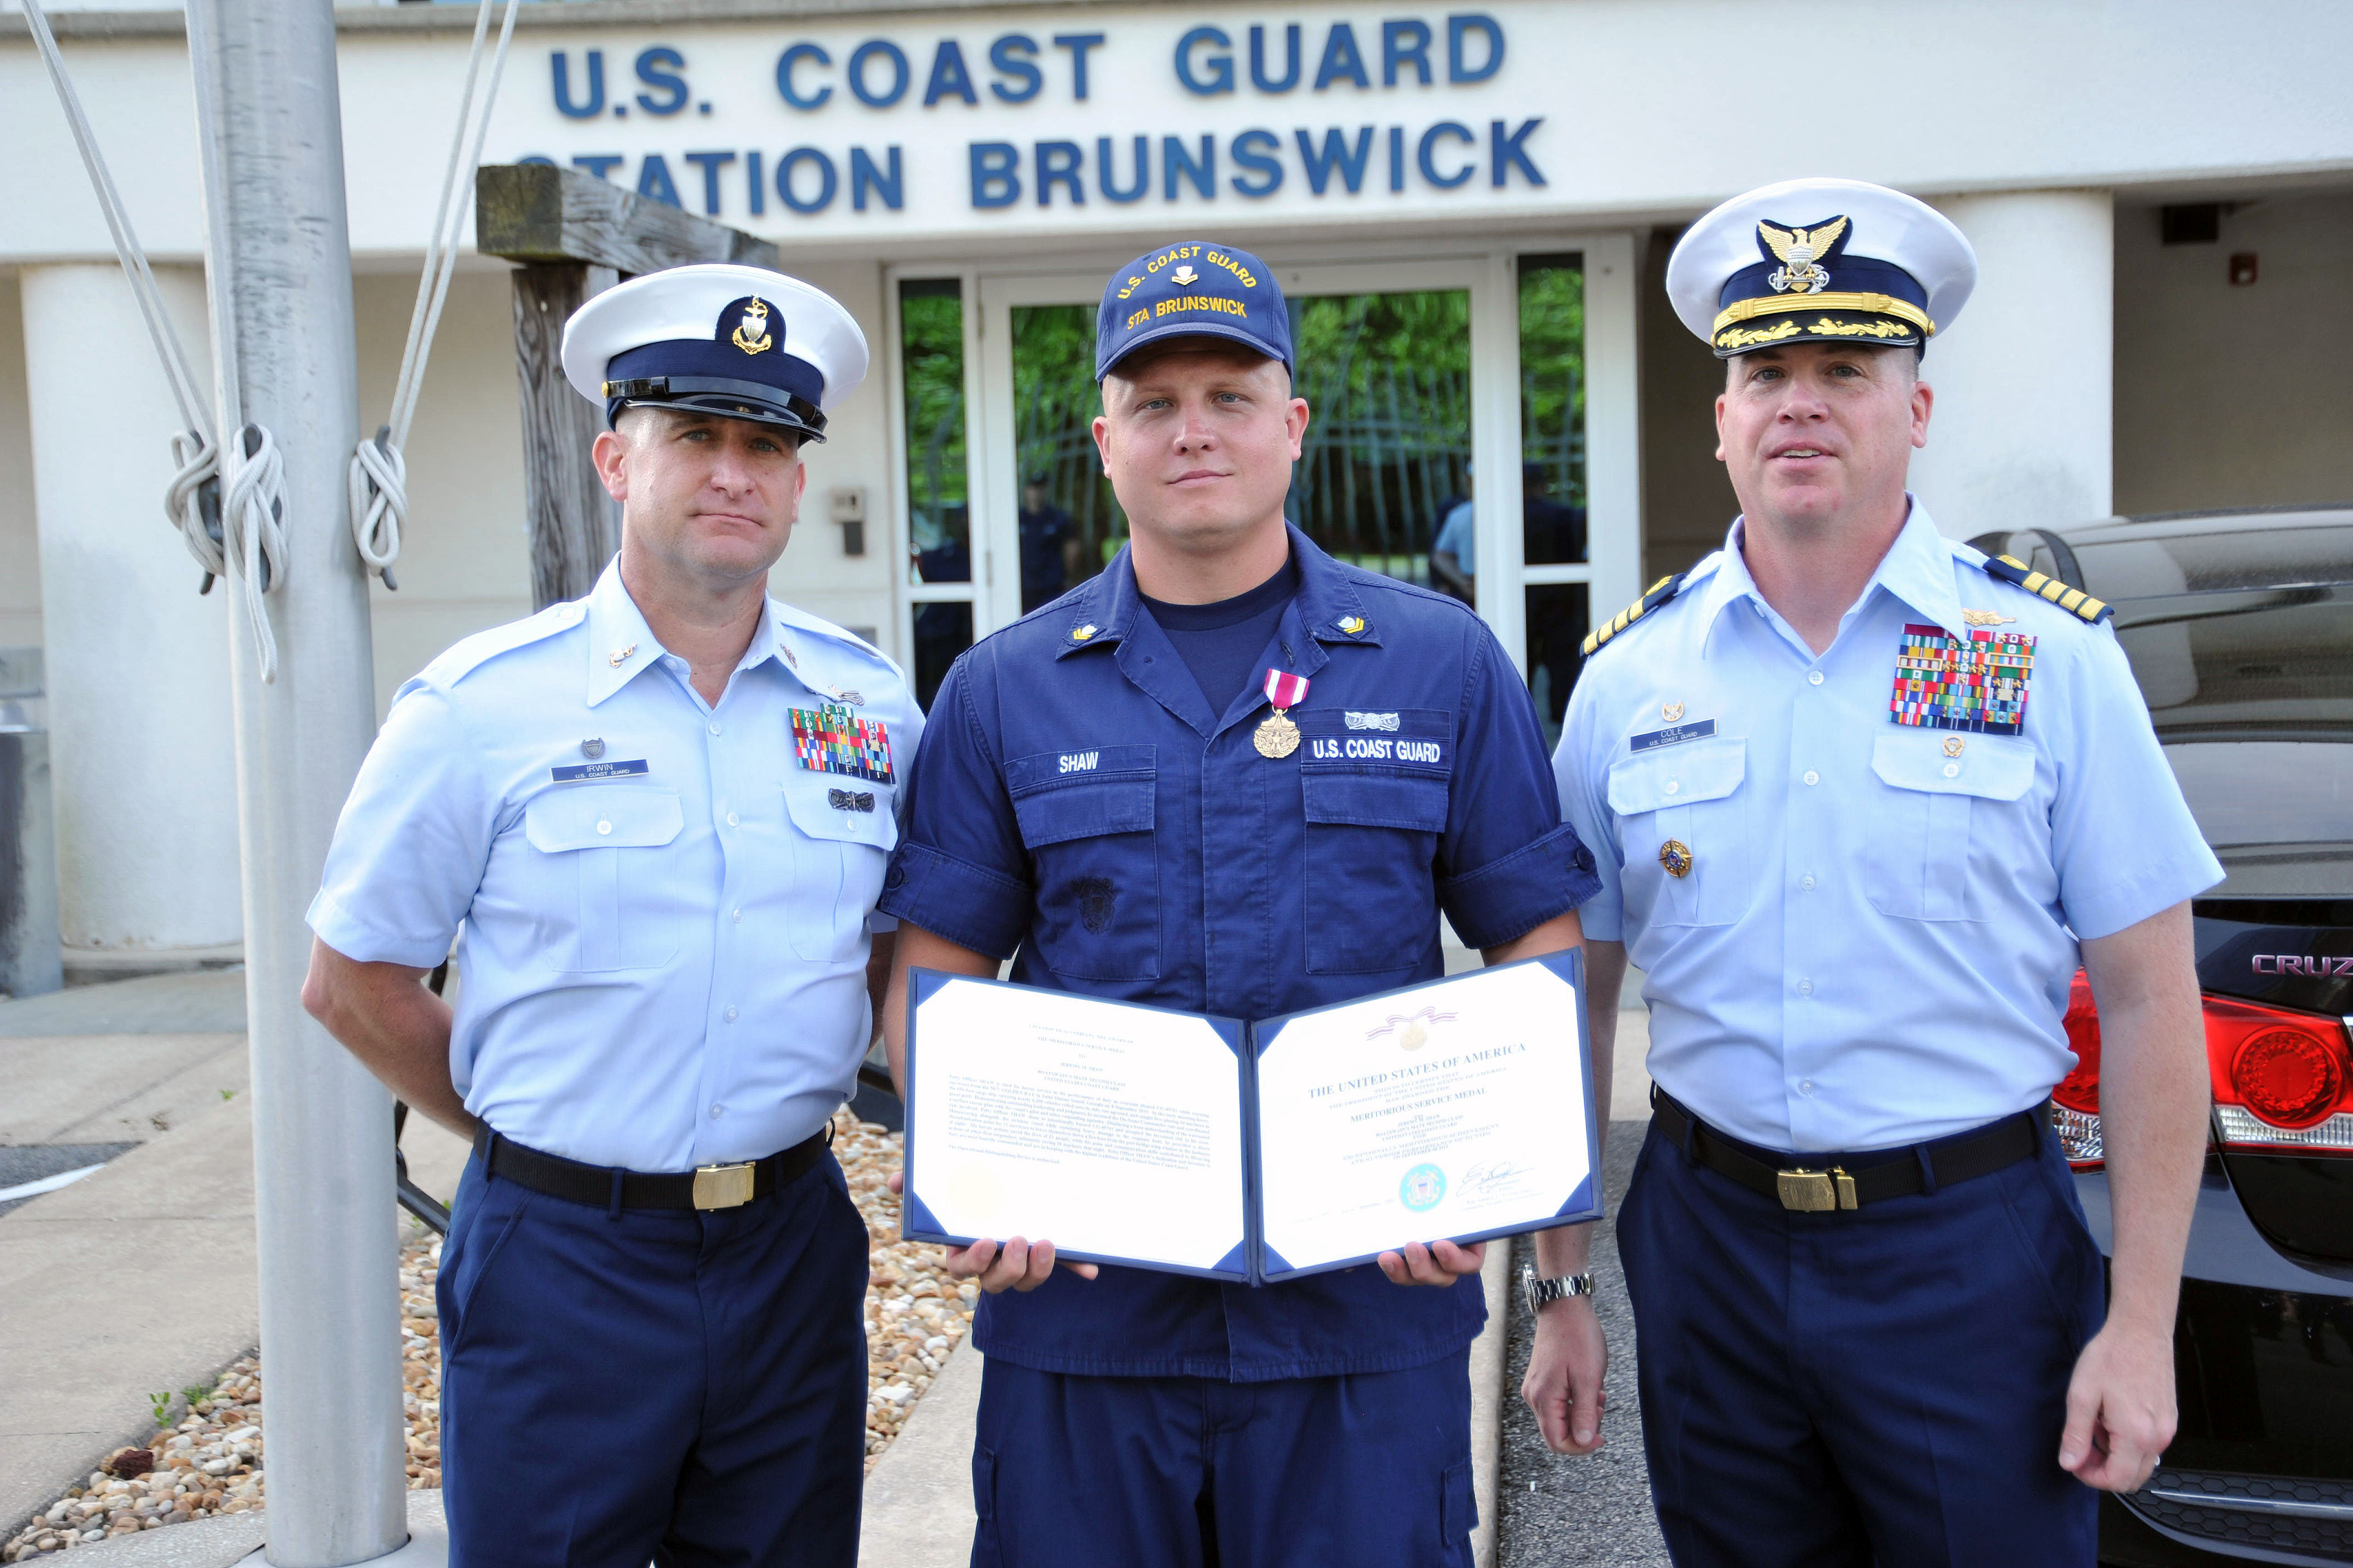 Coast-Guard-Station-Brunswick-award-3200.jpg